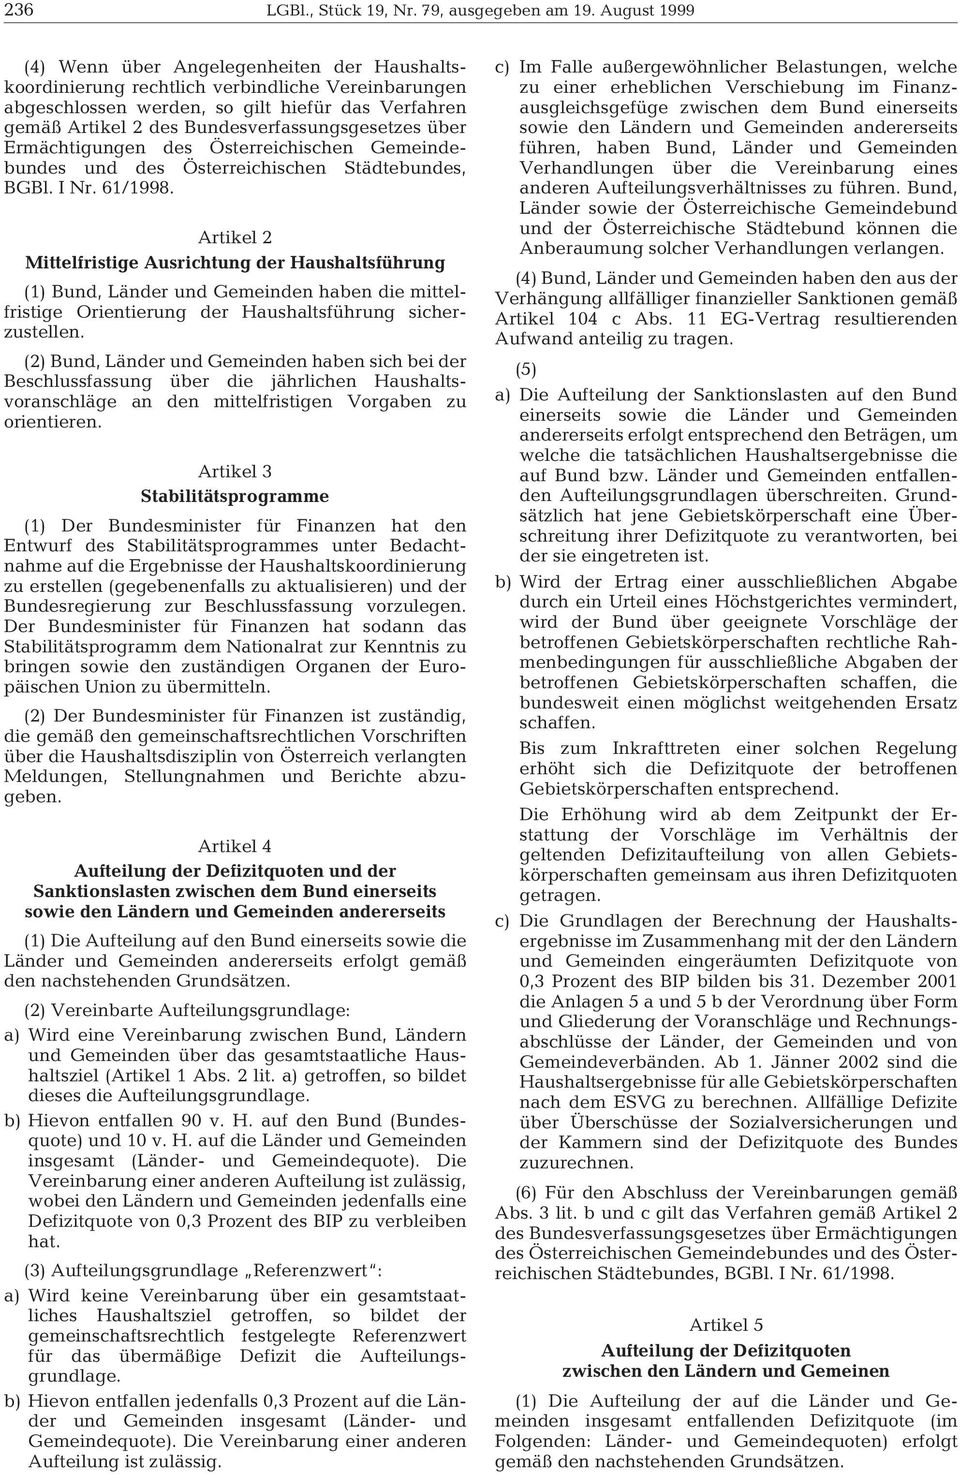 Bundesverfassungsgesetzes über Ermächtigungen des Österreichischen Gemeindebundes und des Österreichischen Städtebundes, BGBl. I Nr. 61/1998.